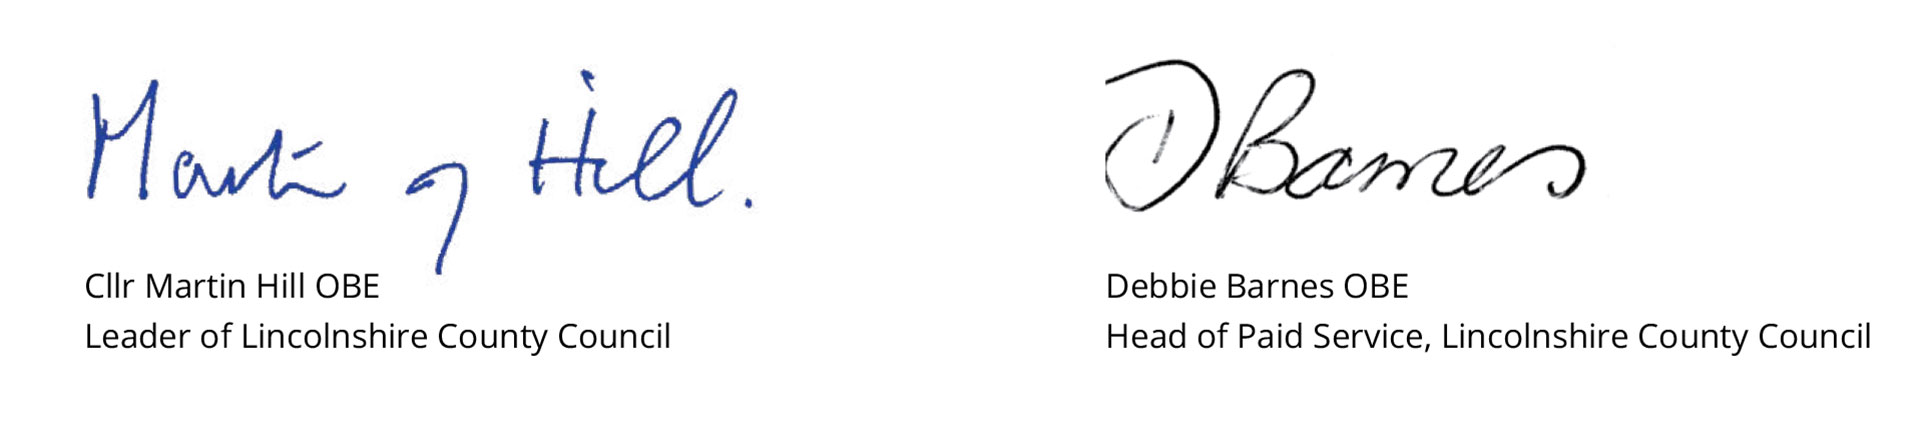 Martin Hill and Debbie Barnes signatures